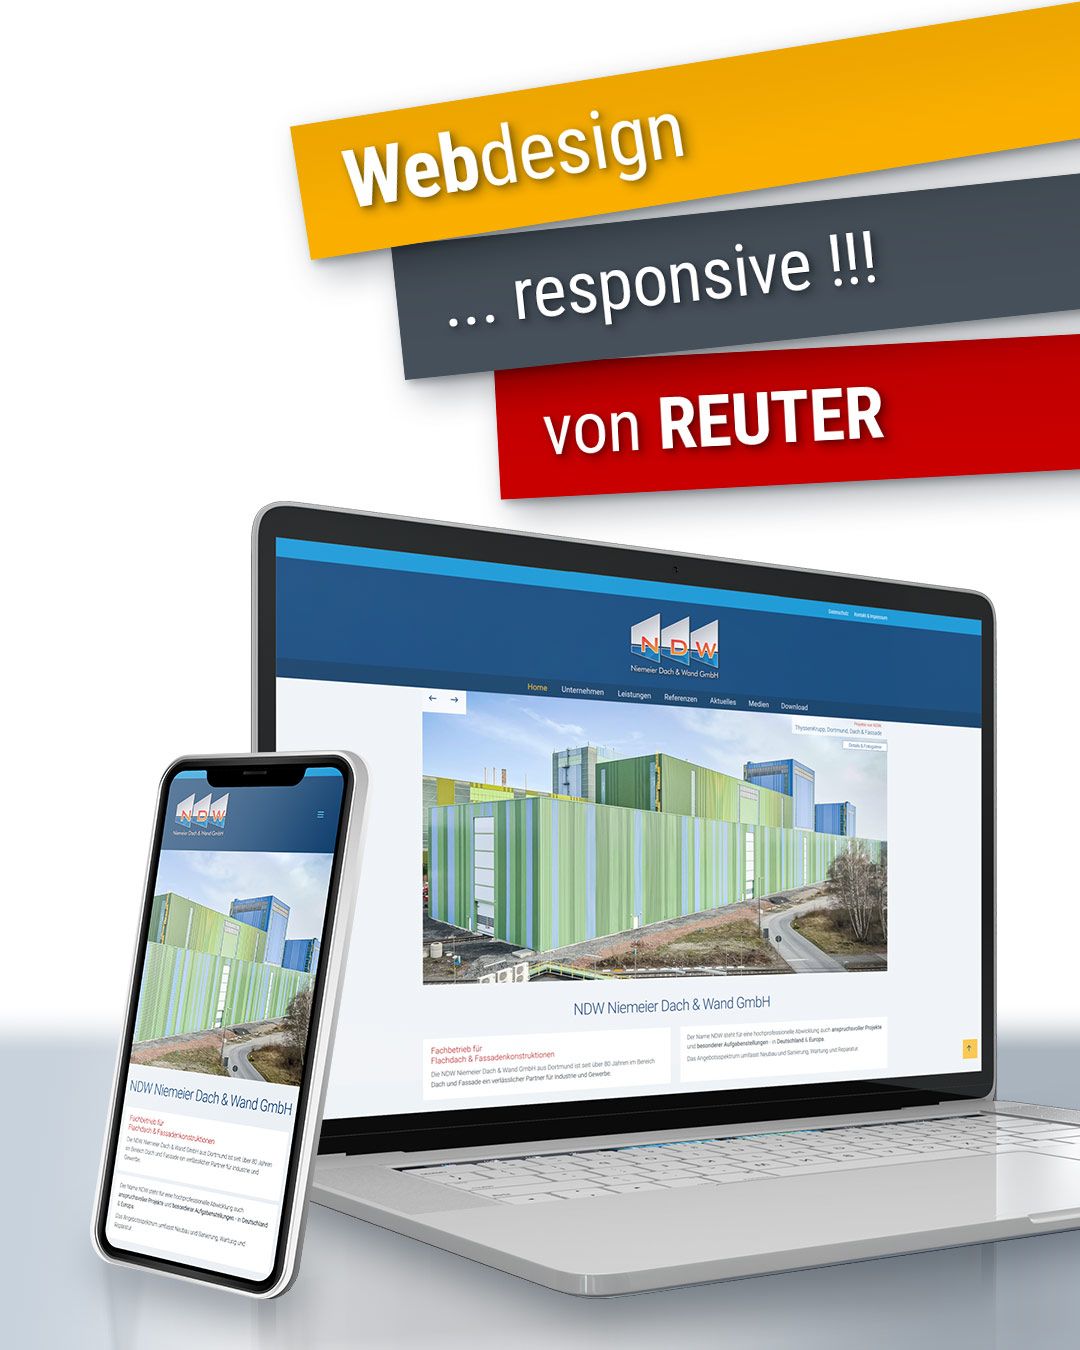 Foto: Leistungen Teil 3: Web-Design, Foto-Design & Logo-Design von REUTER - Werbung, die wirkt.